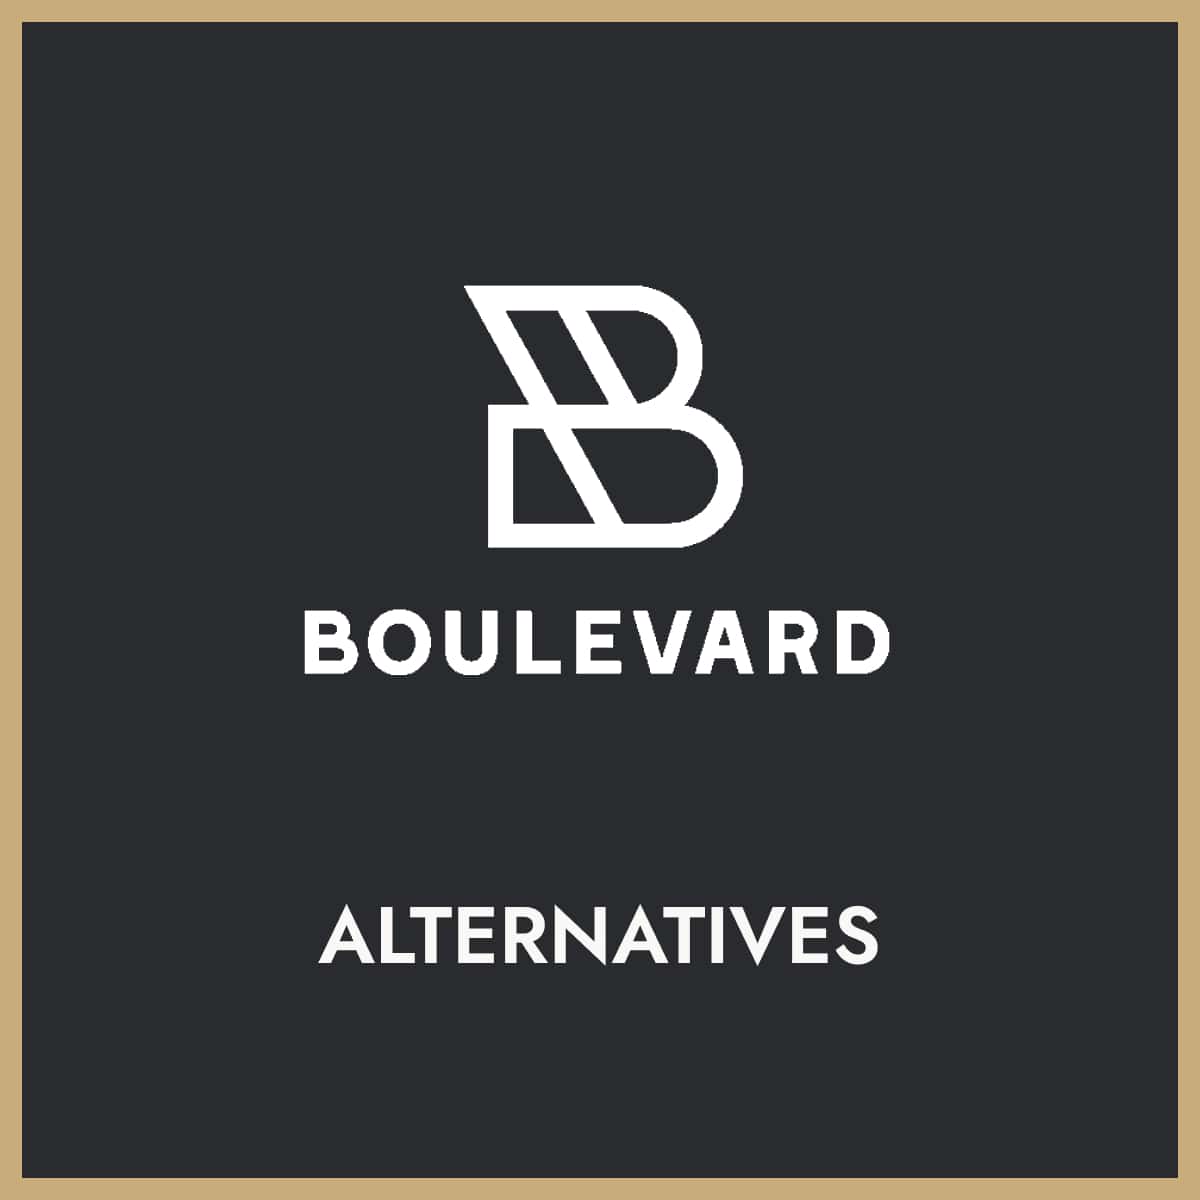 Boulevard company logo above the word "alternatives"